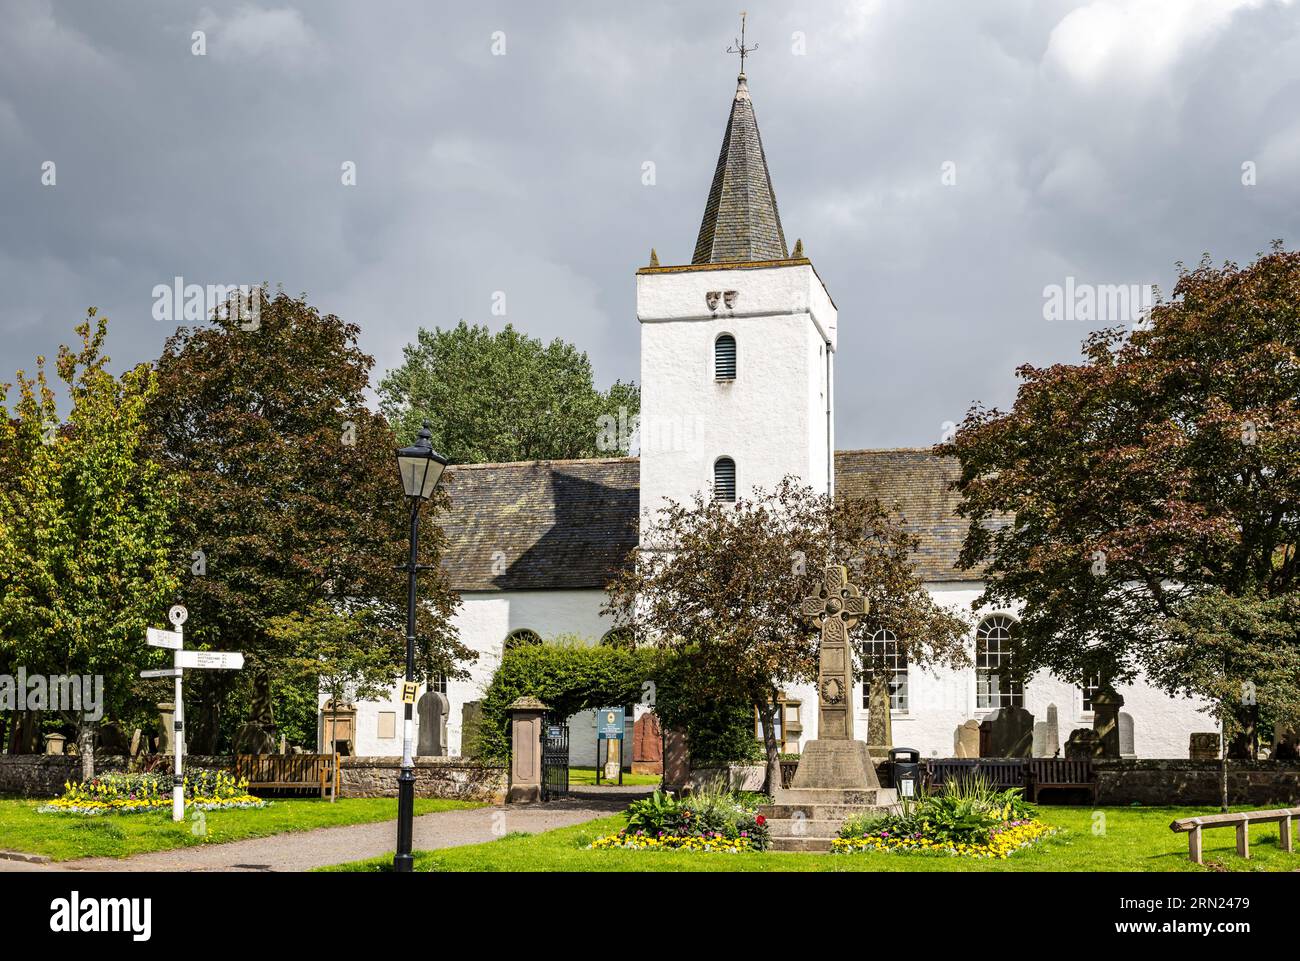 Clocher de l'église paroissiale du village de Gifford & Yester, cimetière et mémorial de guerre, East Lothian, Écosse, Royaume-Uni Banque D'Images